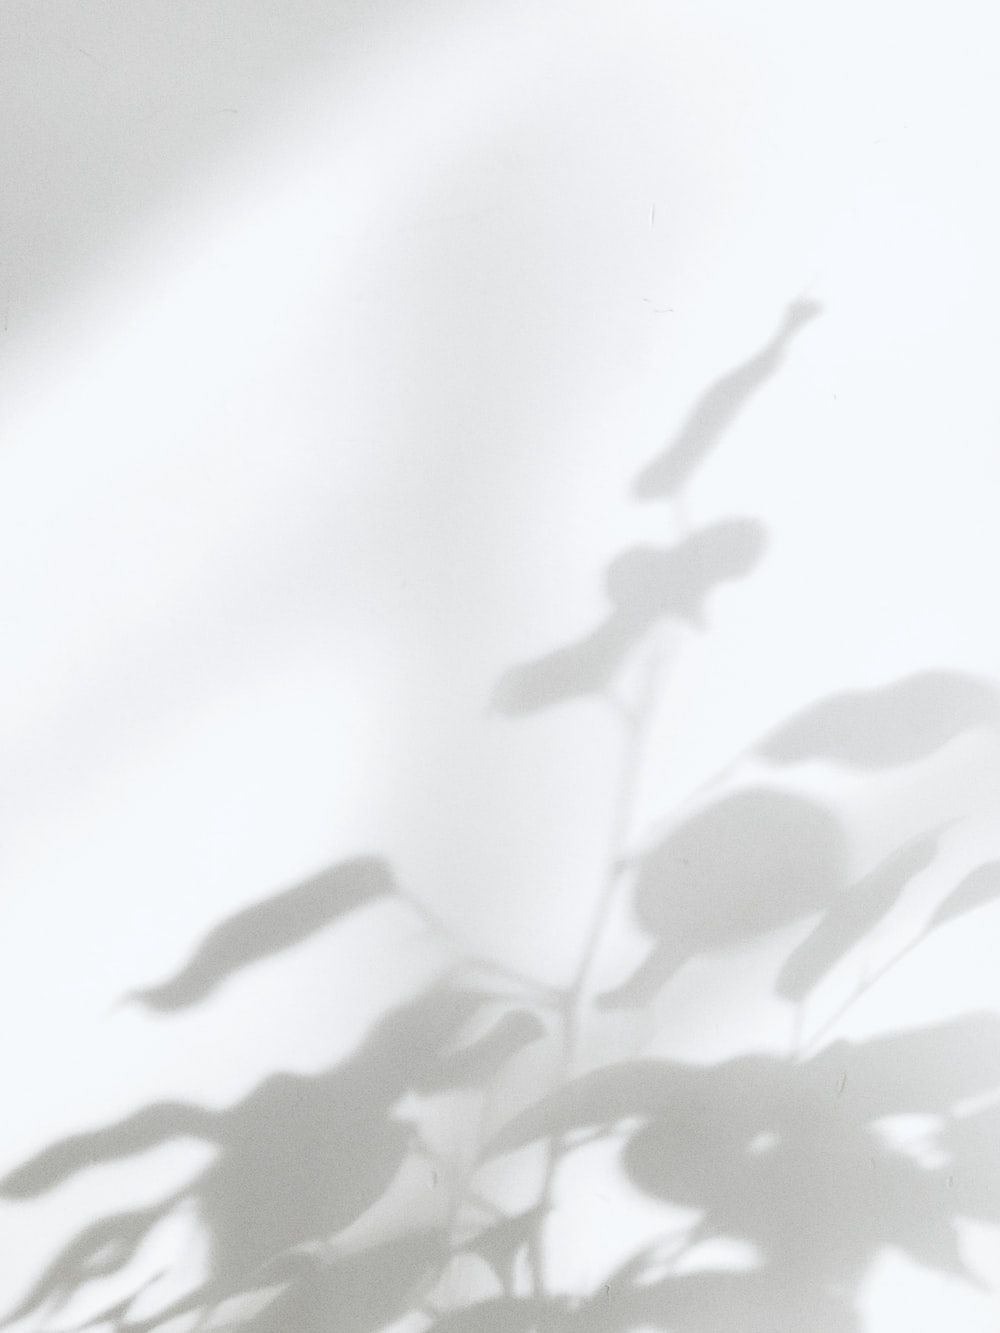  Weisses Hintergrundbild 1000x1333. Foto zum Thema Weißes und schwarzes Blumentextil